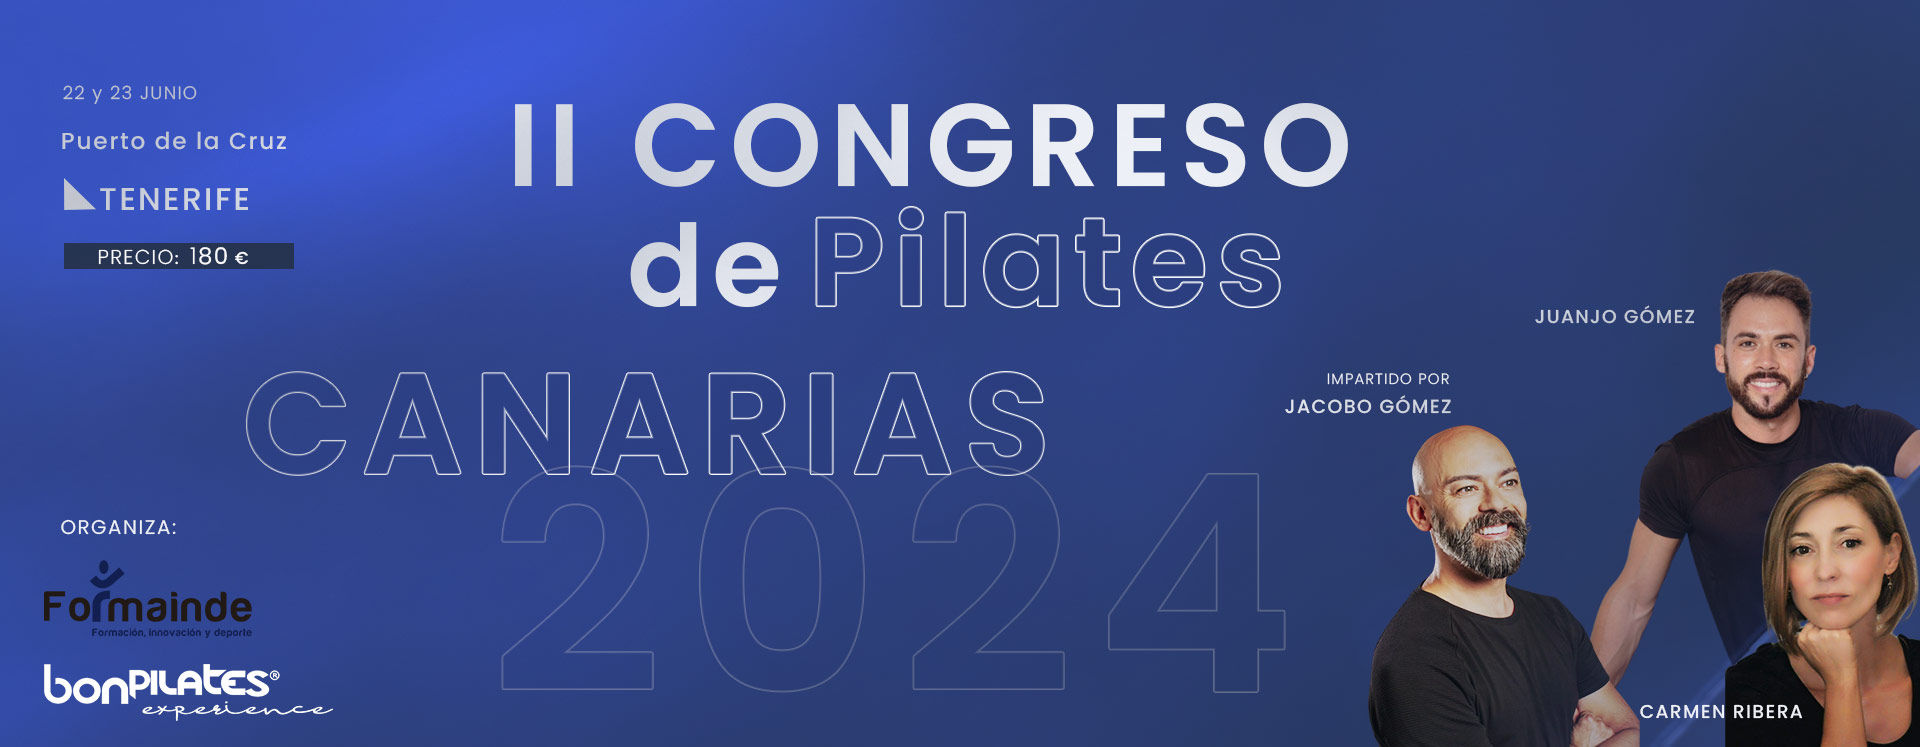 BANNER  1920x747px - II Congreso de Pilates Canarias